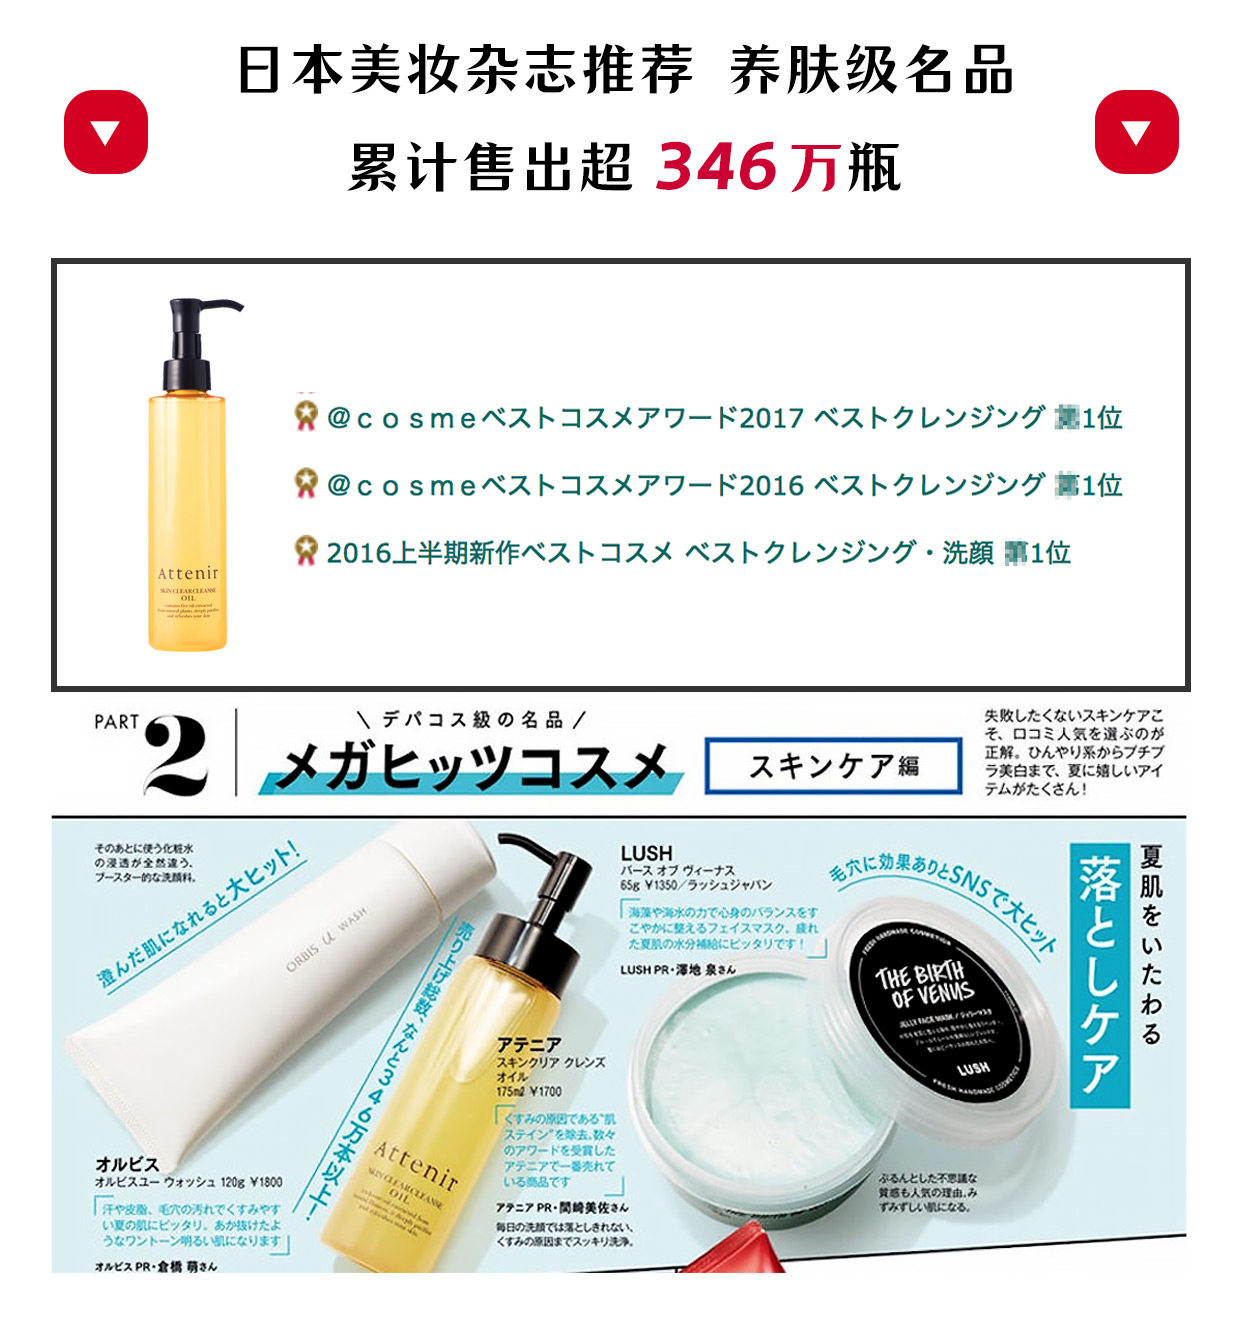 【日本直邮】COSME大赏第一位 日本ATTENIR艾天然 双重洁净卸妆油 清新柑橘香 175ml(暂时缺货)